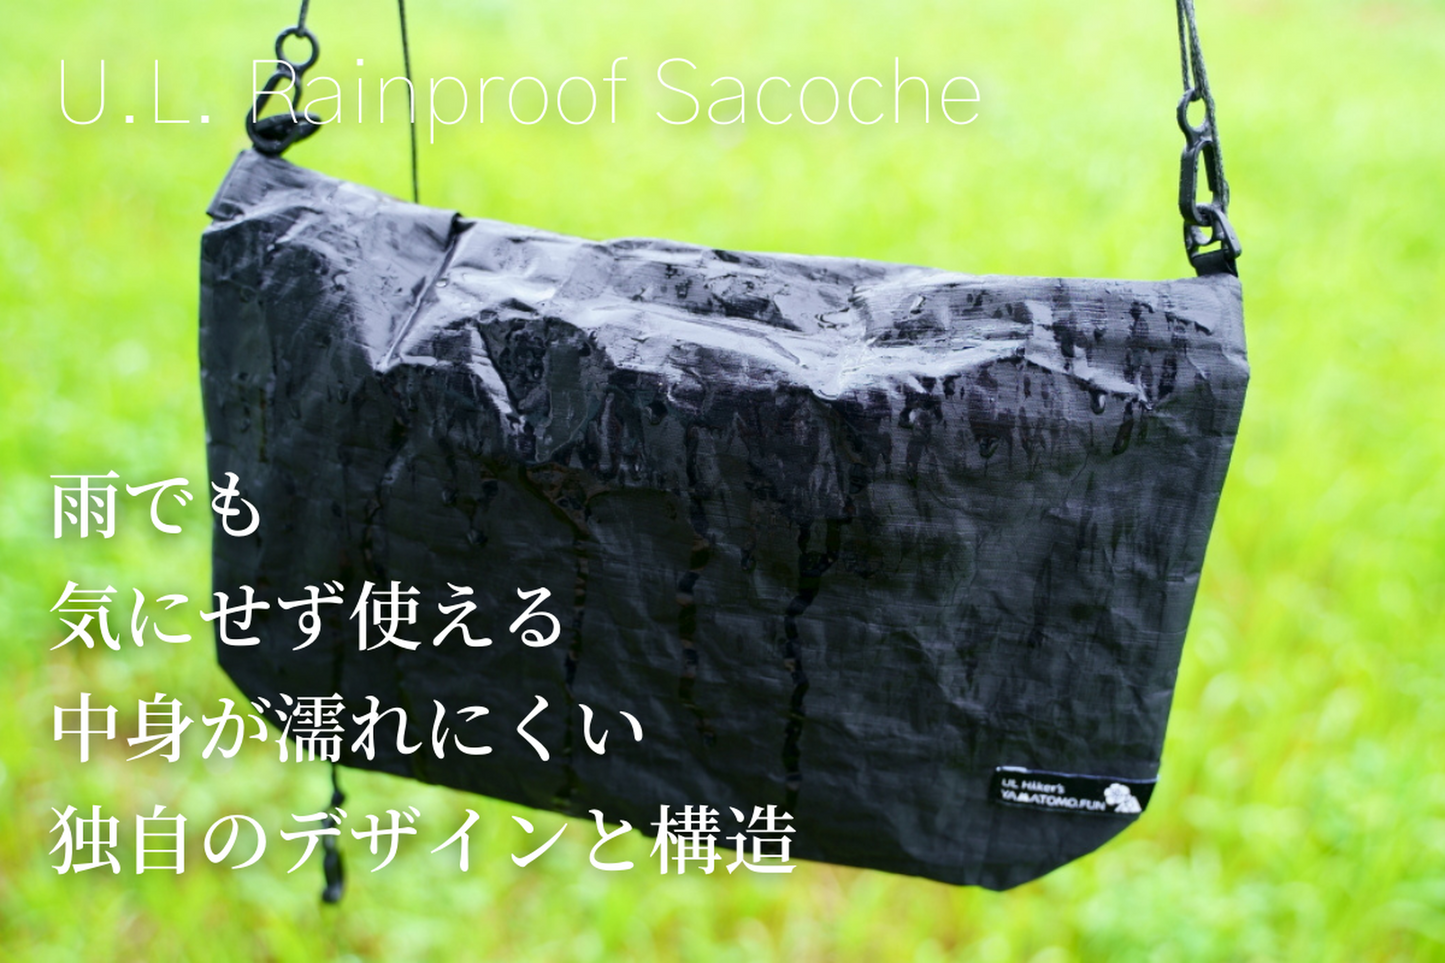 U.L. Rainproof Sacoche（ウルトラライトレインプルーフサコッシュ）